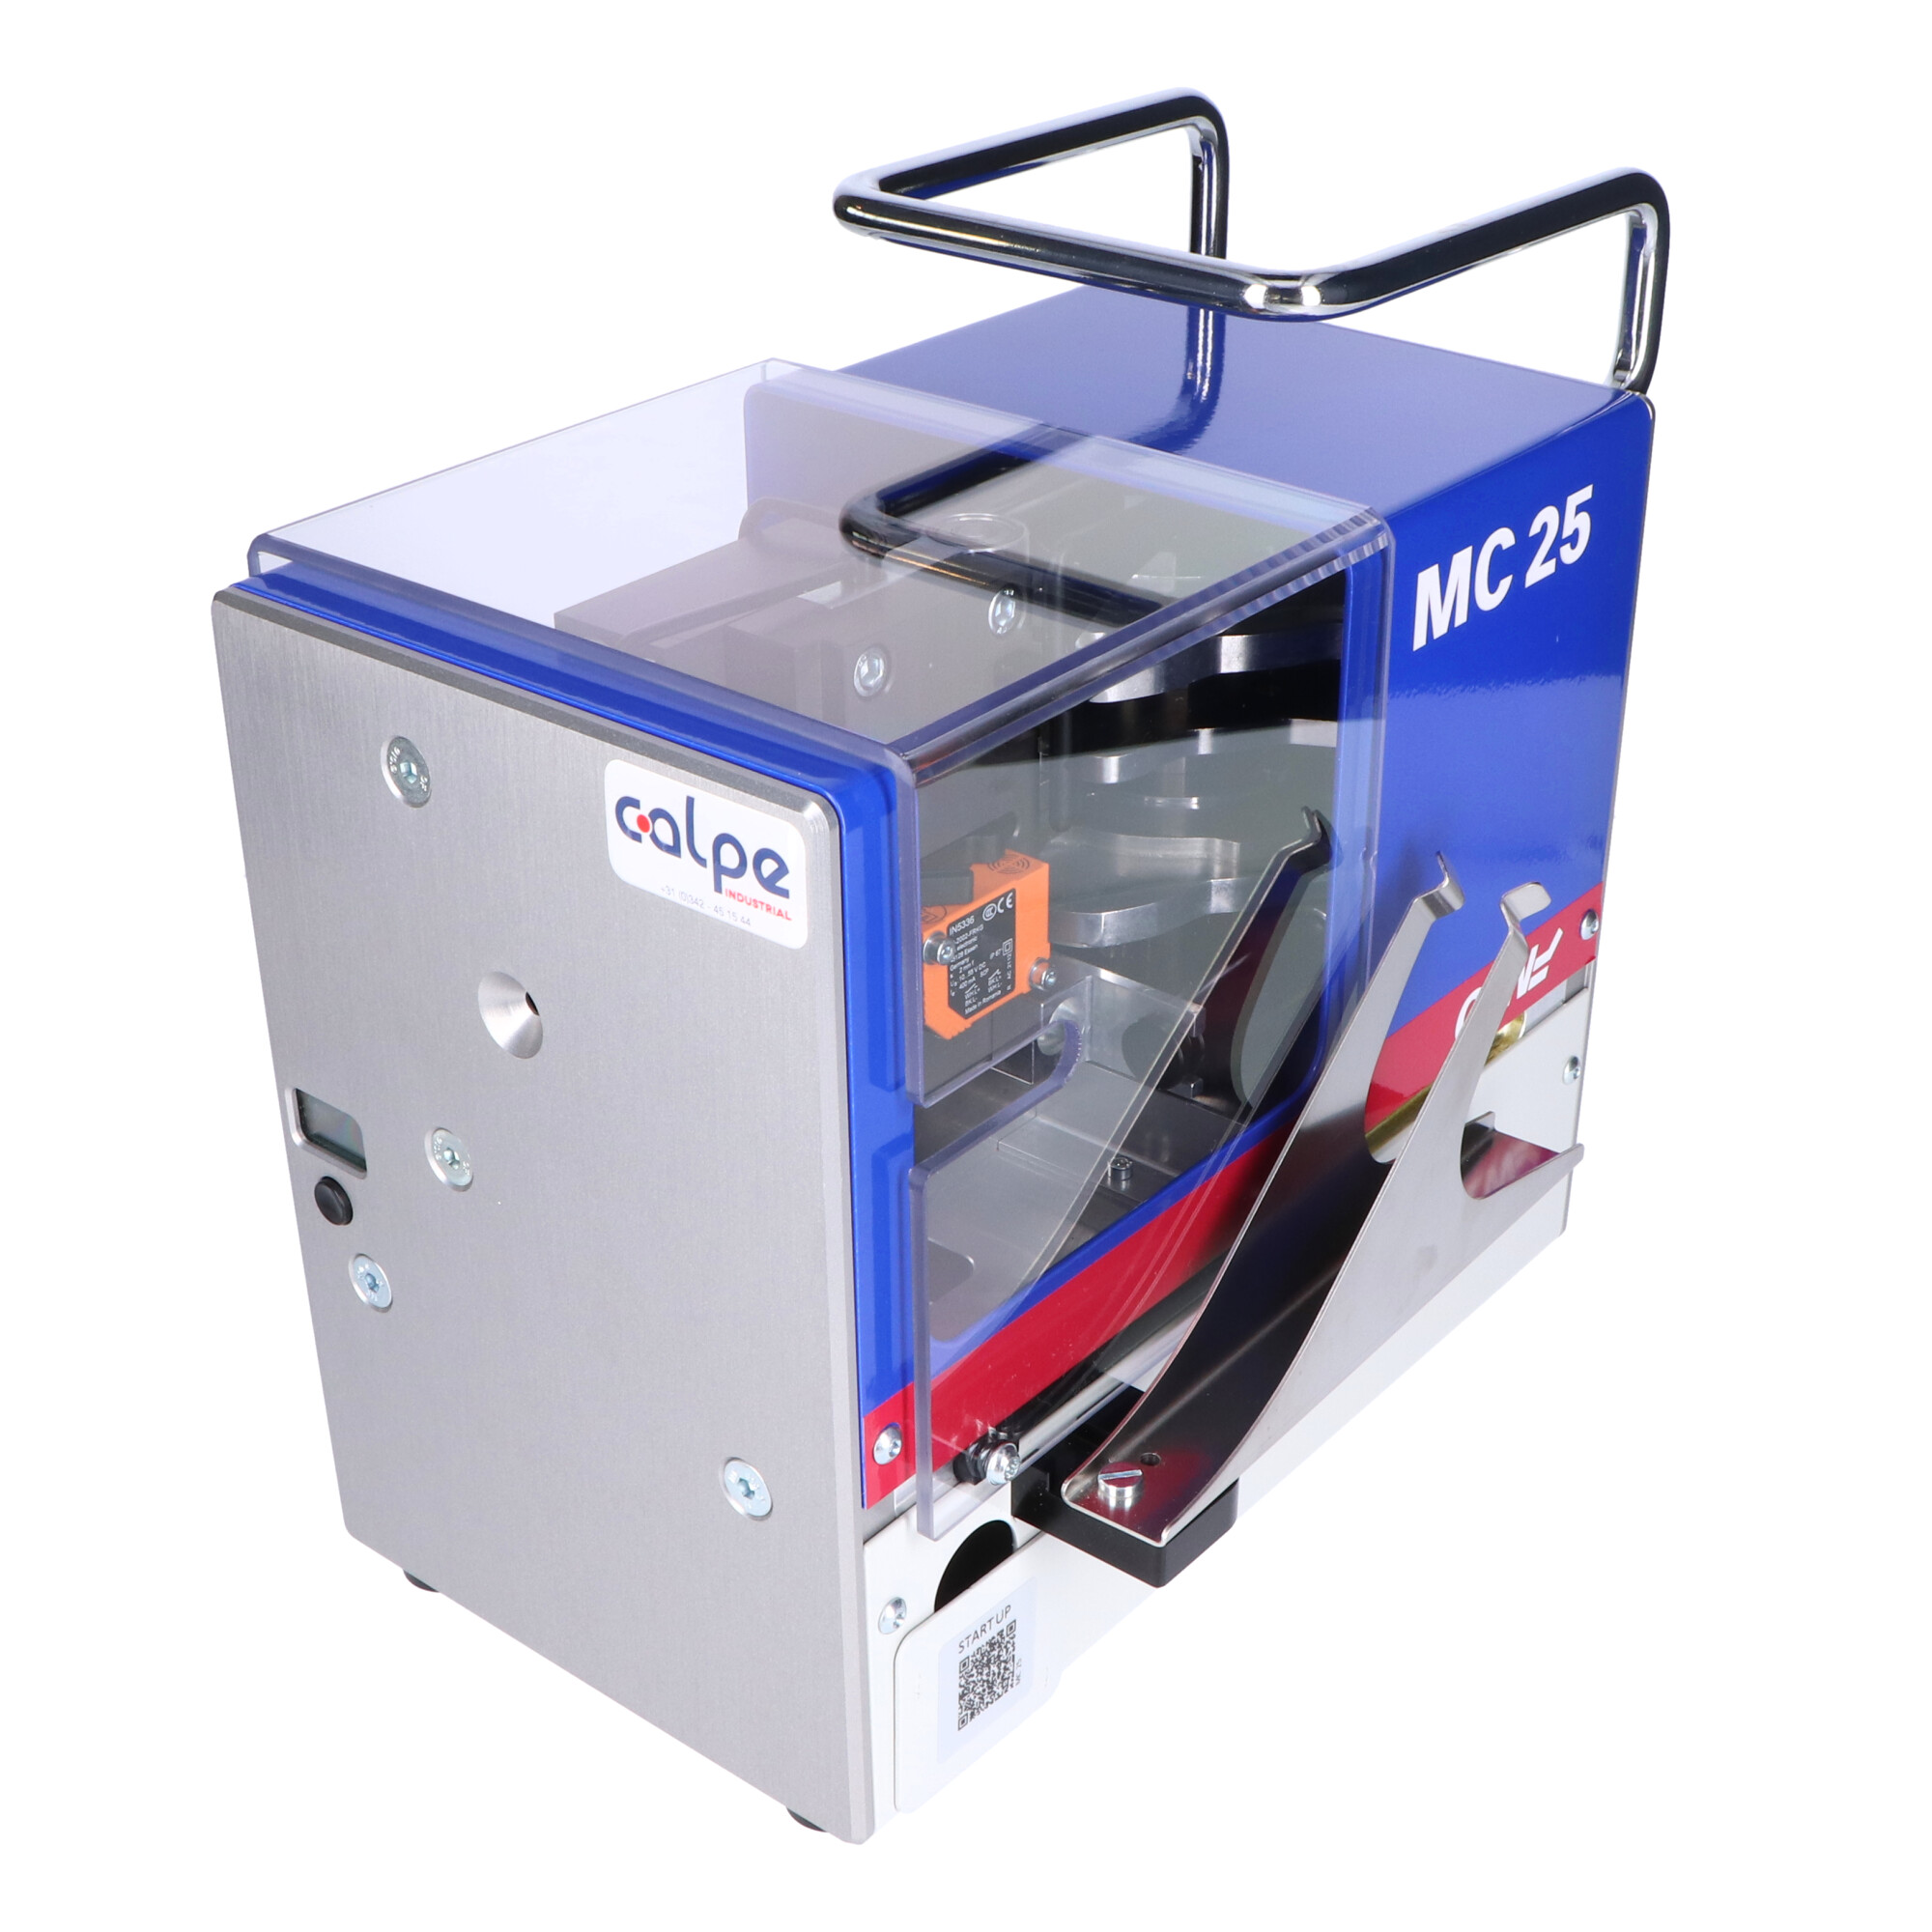 15-MC25 MC 25 De MC 25 verwerkt adereindhulzen in cassette.
Standaard is deze elektrische strip- en krimpmachine inclusief verwisselbare onderdelen voor het verwerken
van 0,5-2,5 mm². De krimpstempels kunnen eenvoudig en veilig zonder gereedschap worden verwisseld.
Optioneel, biedt de uitbreidingskit de mogelijkheid om 0,25-0,34 mm² adereindhulzen te verwerken.